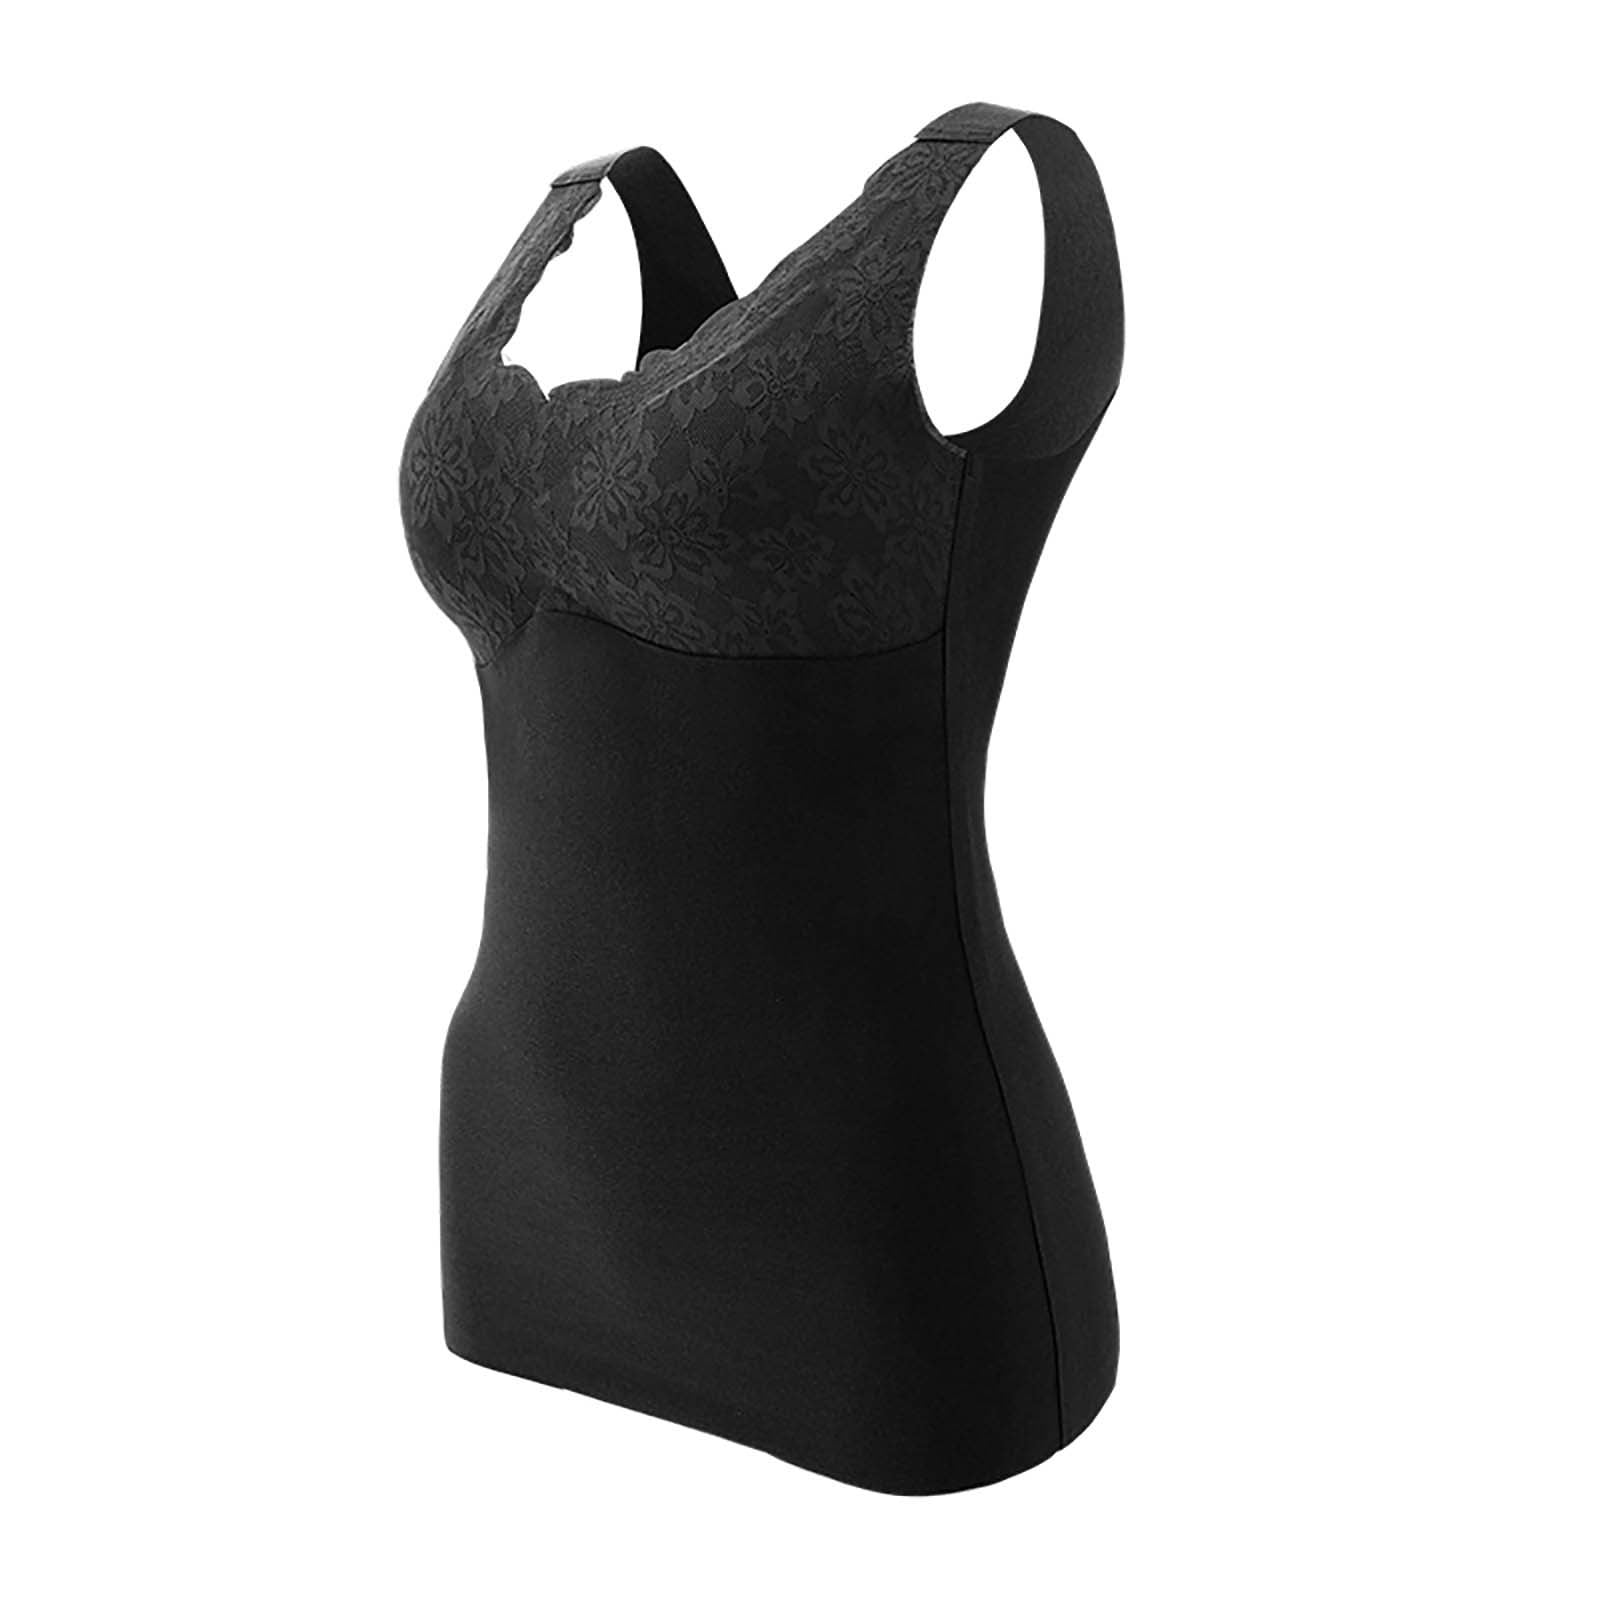 Fleece Lined Thermal Underwear for Women Cami Tank Winter Warm Self ...